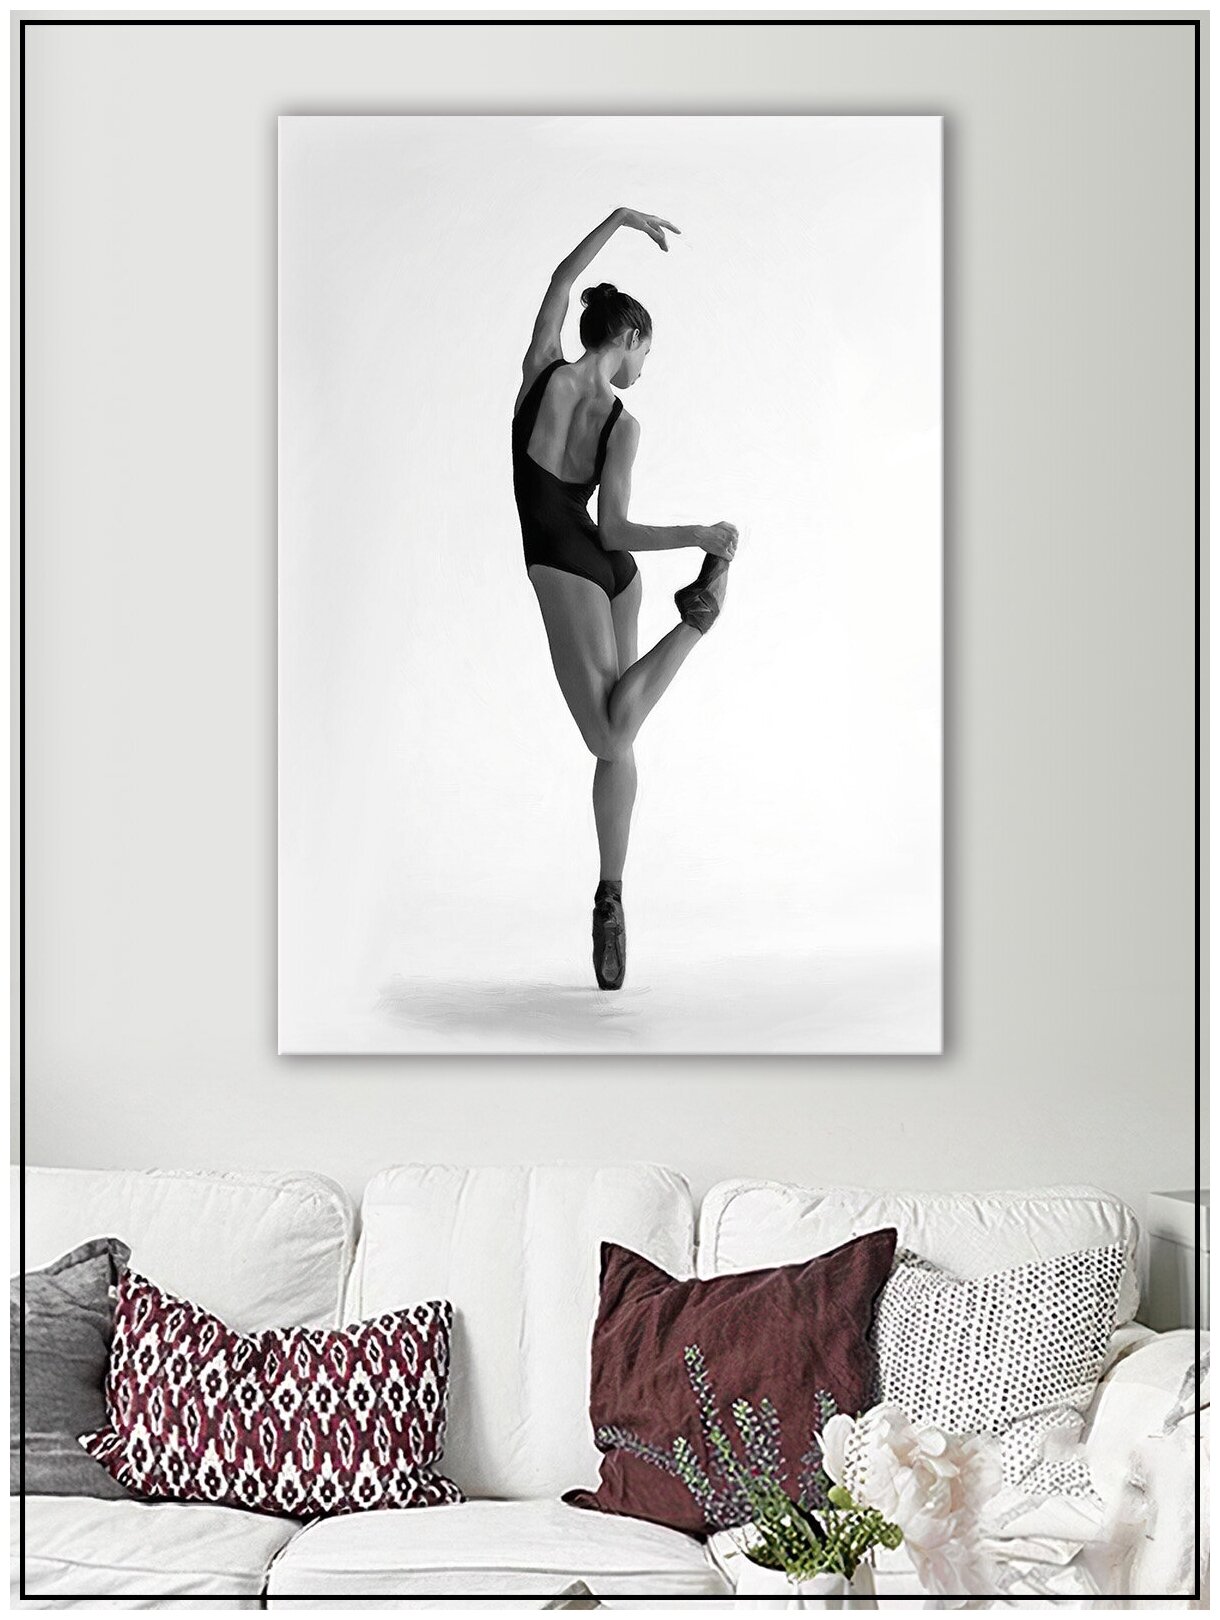 Картина для интерьера на натуральном хлопковом холсте "Балерина на белом фоне", 30*40см, холст на подрамнике, картина в подарок для дома